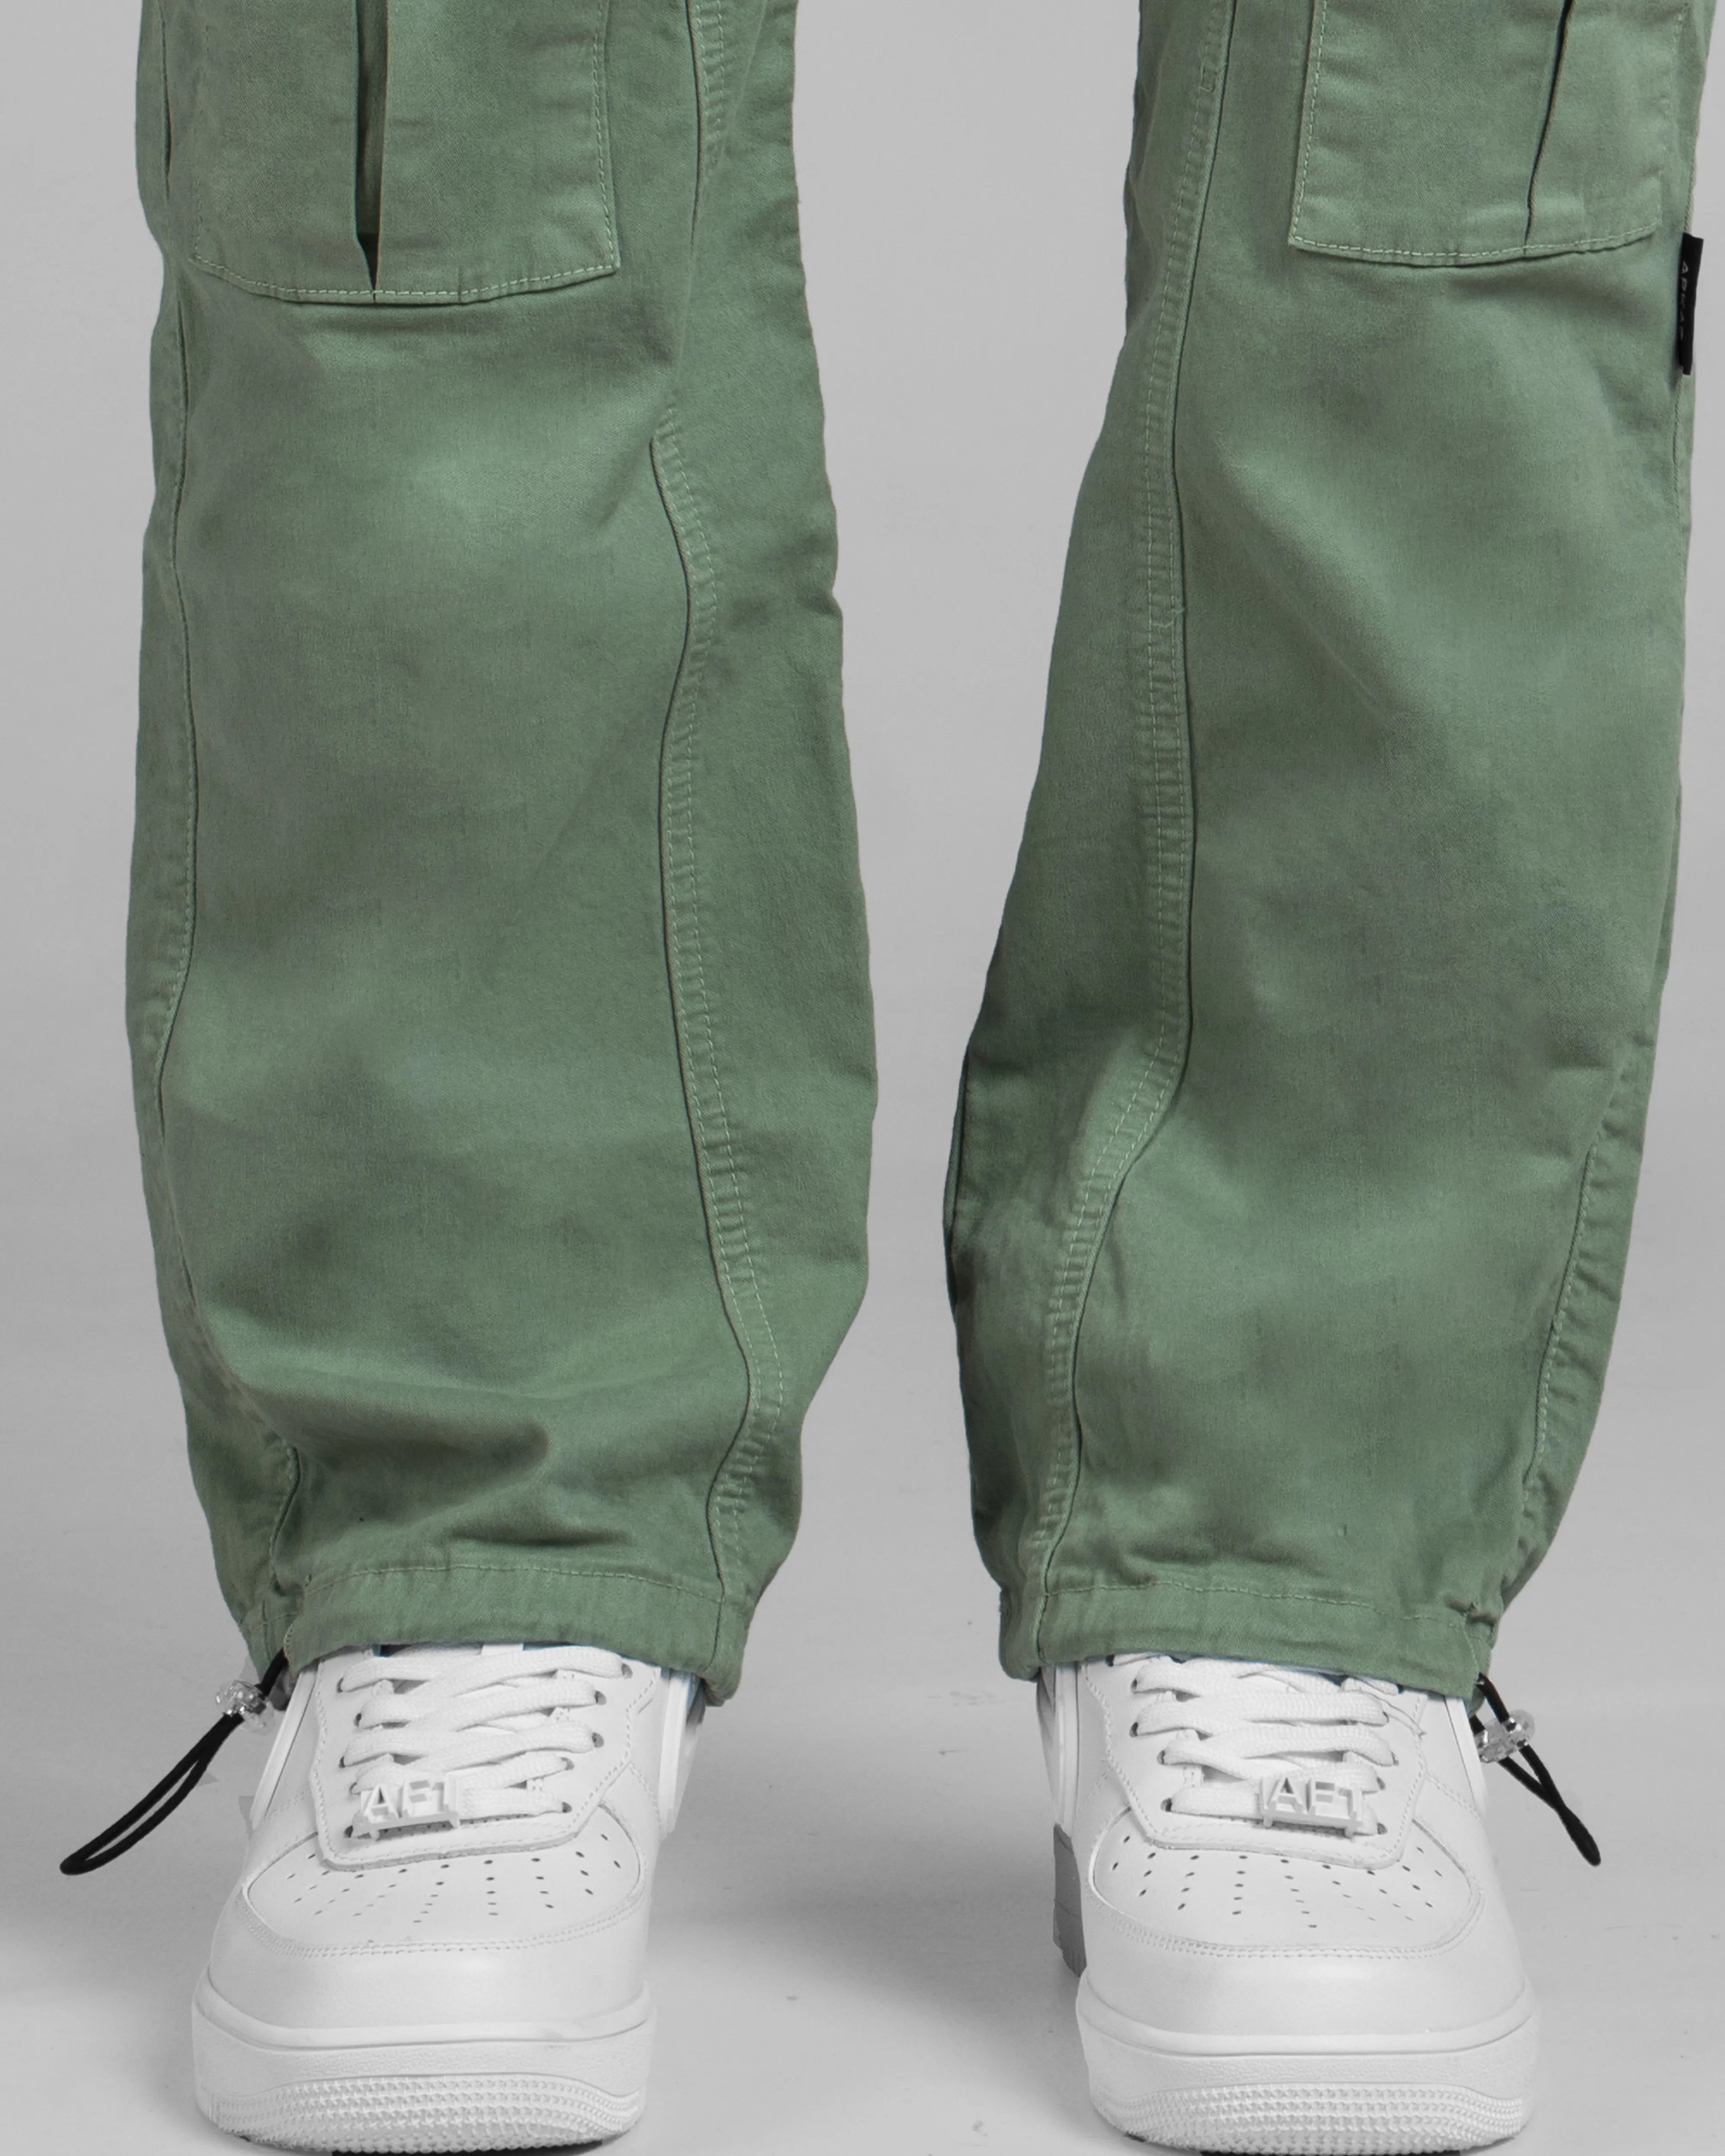 Pantalón Cargo Verde Claro